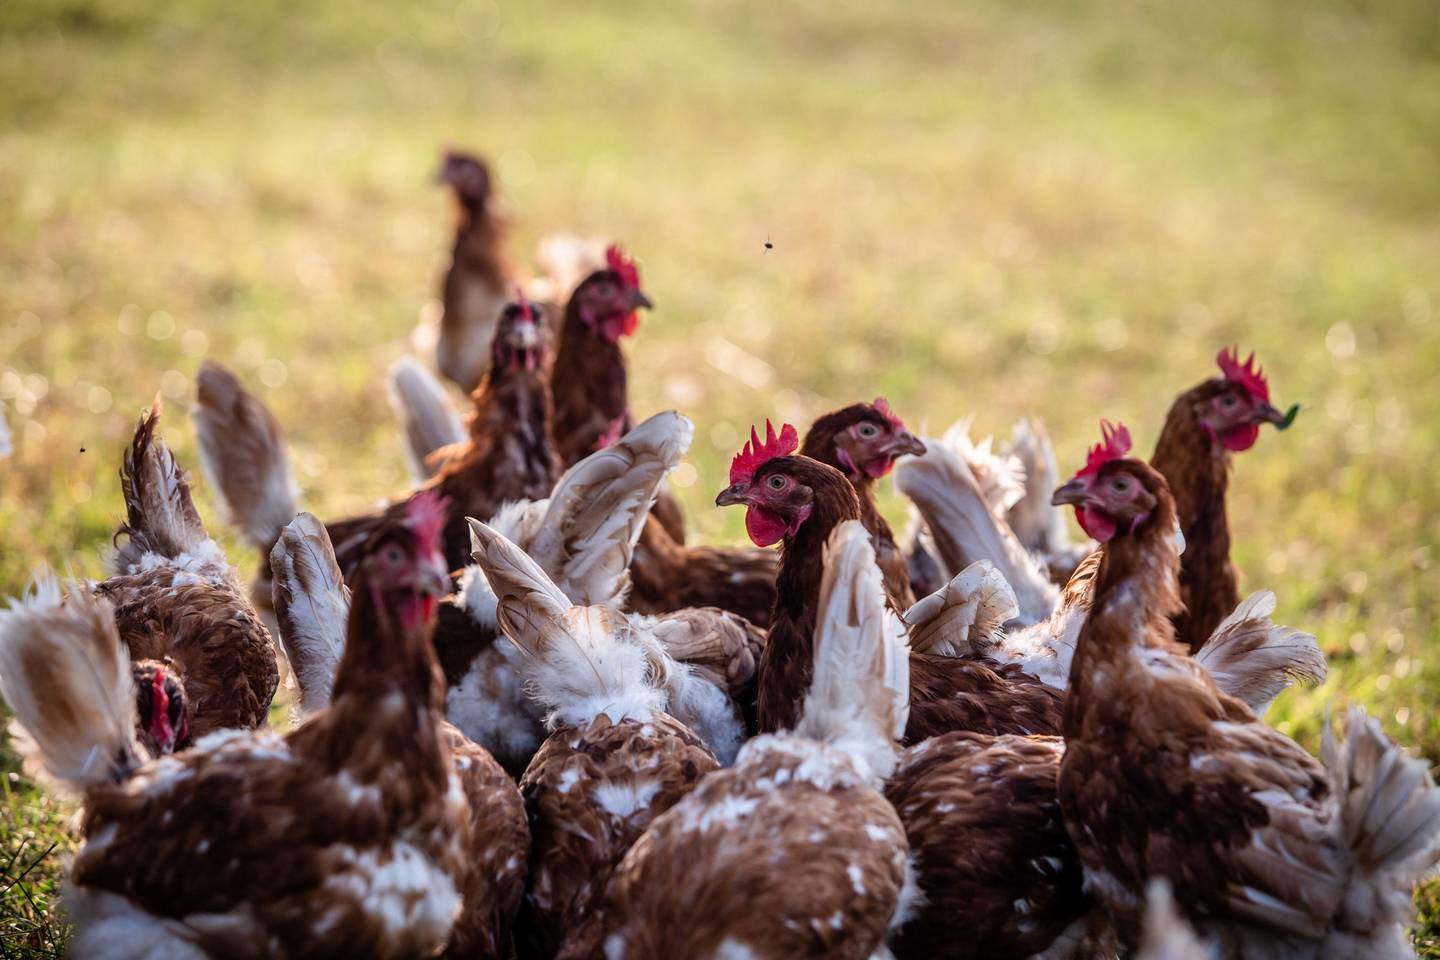 La transmisión de la influenza aviar en humanos es bajo, pero los trabajadores de las granjas son los más propensos a contagiarse.